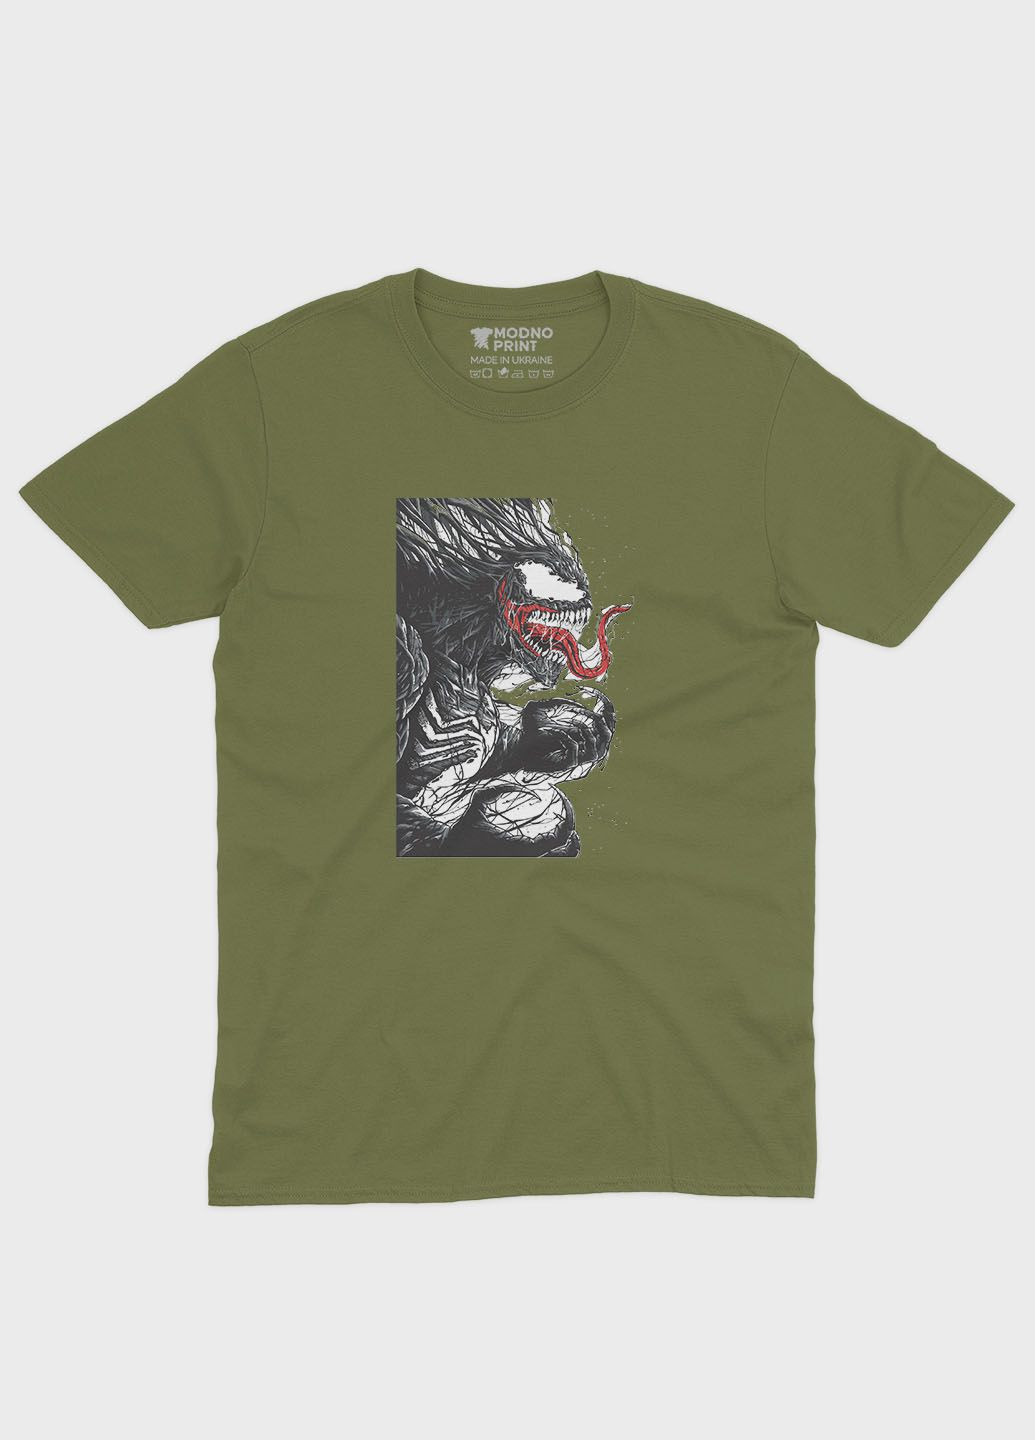 Хаки (оливковая) мужская футболка с принтом супервора - веном (ts001-1-hgr-006-013-004) Modno